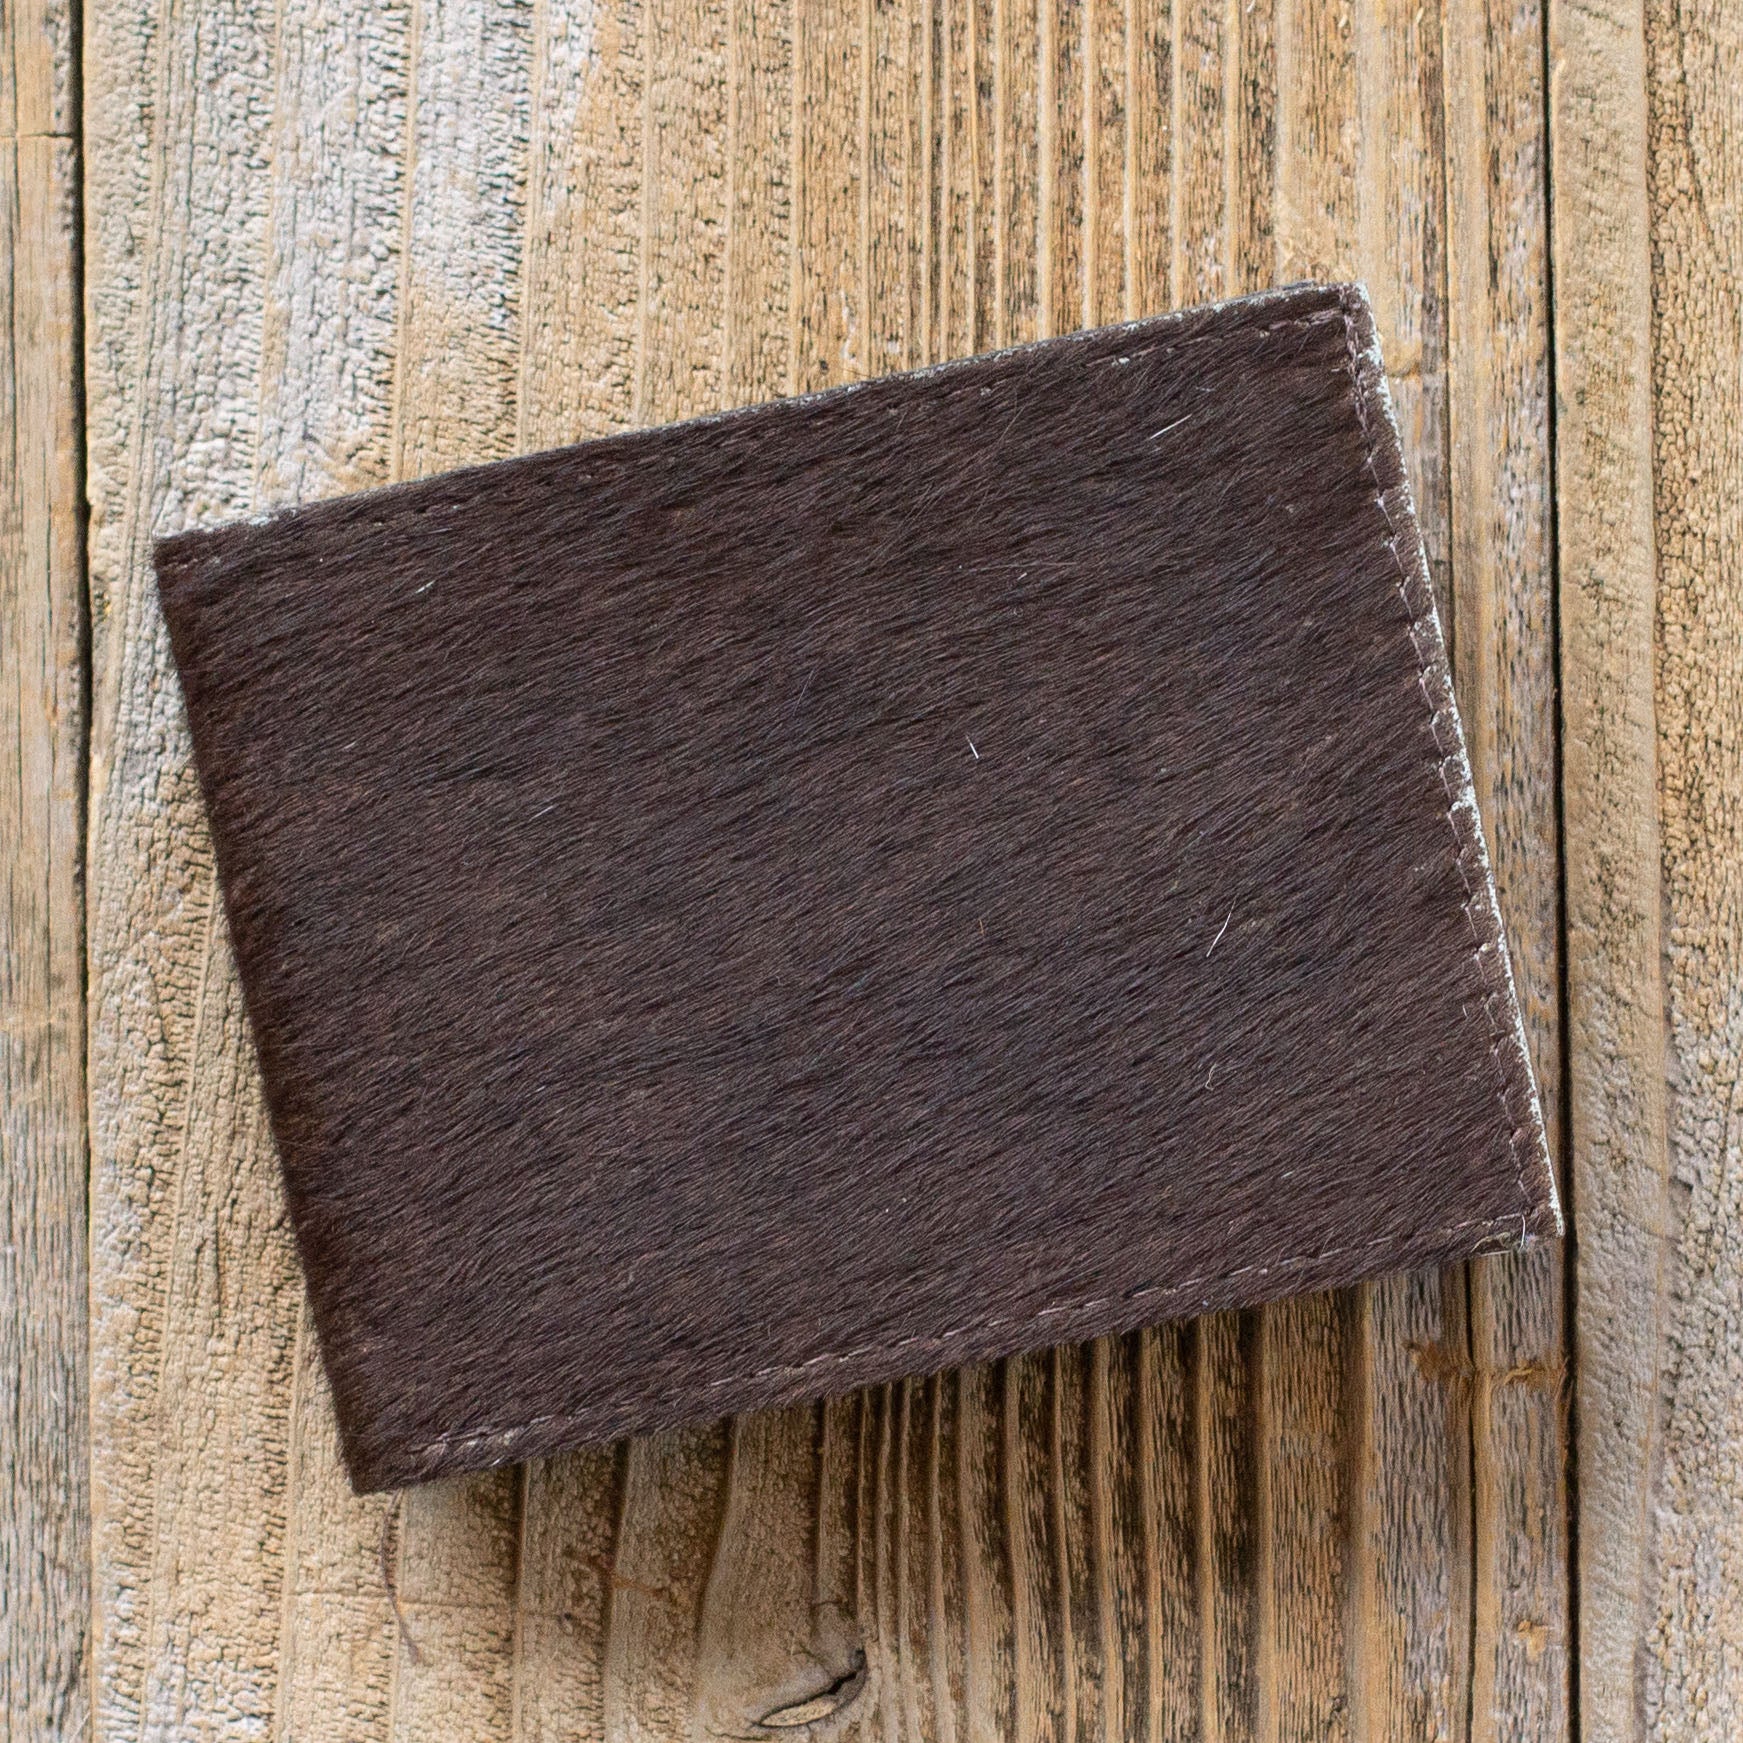 Bi-Fold Wallet No. 376